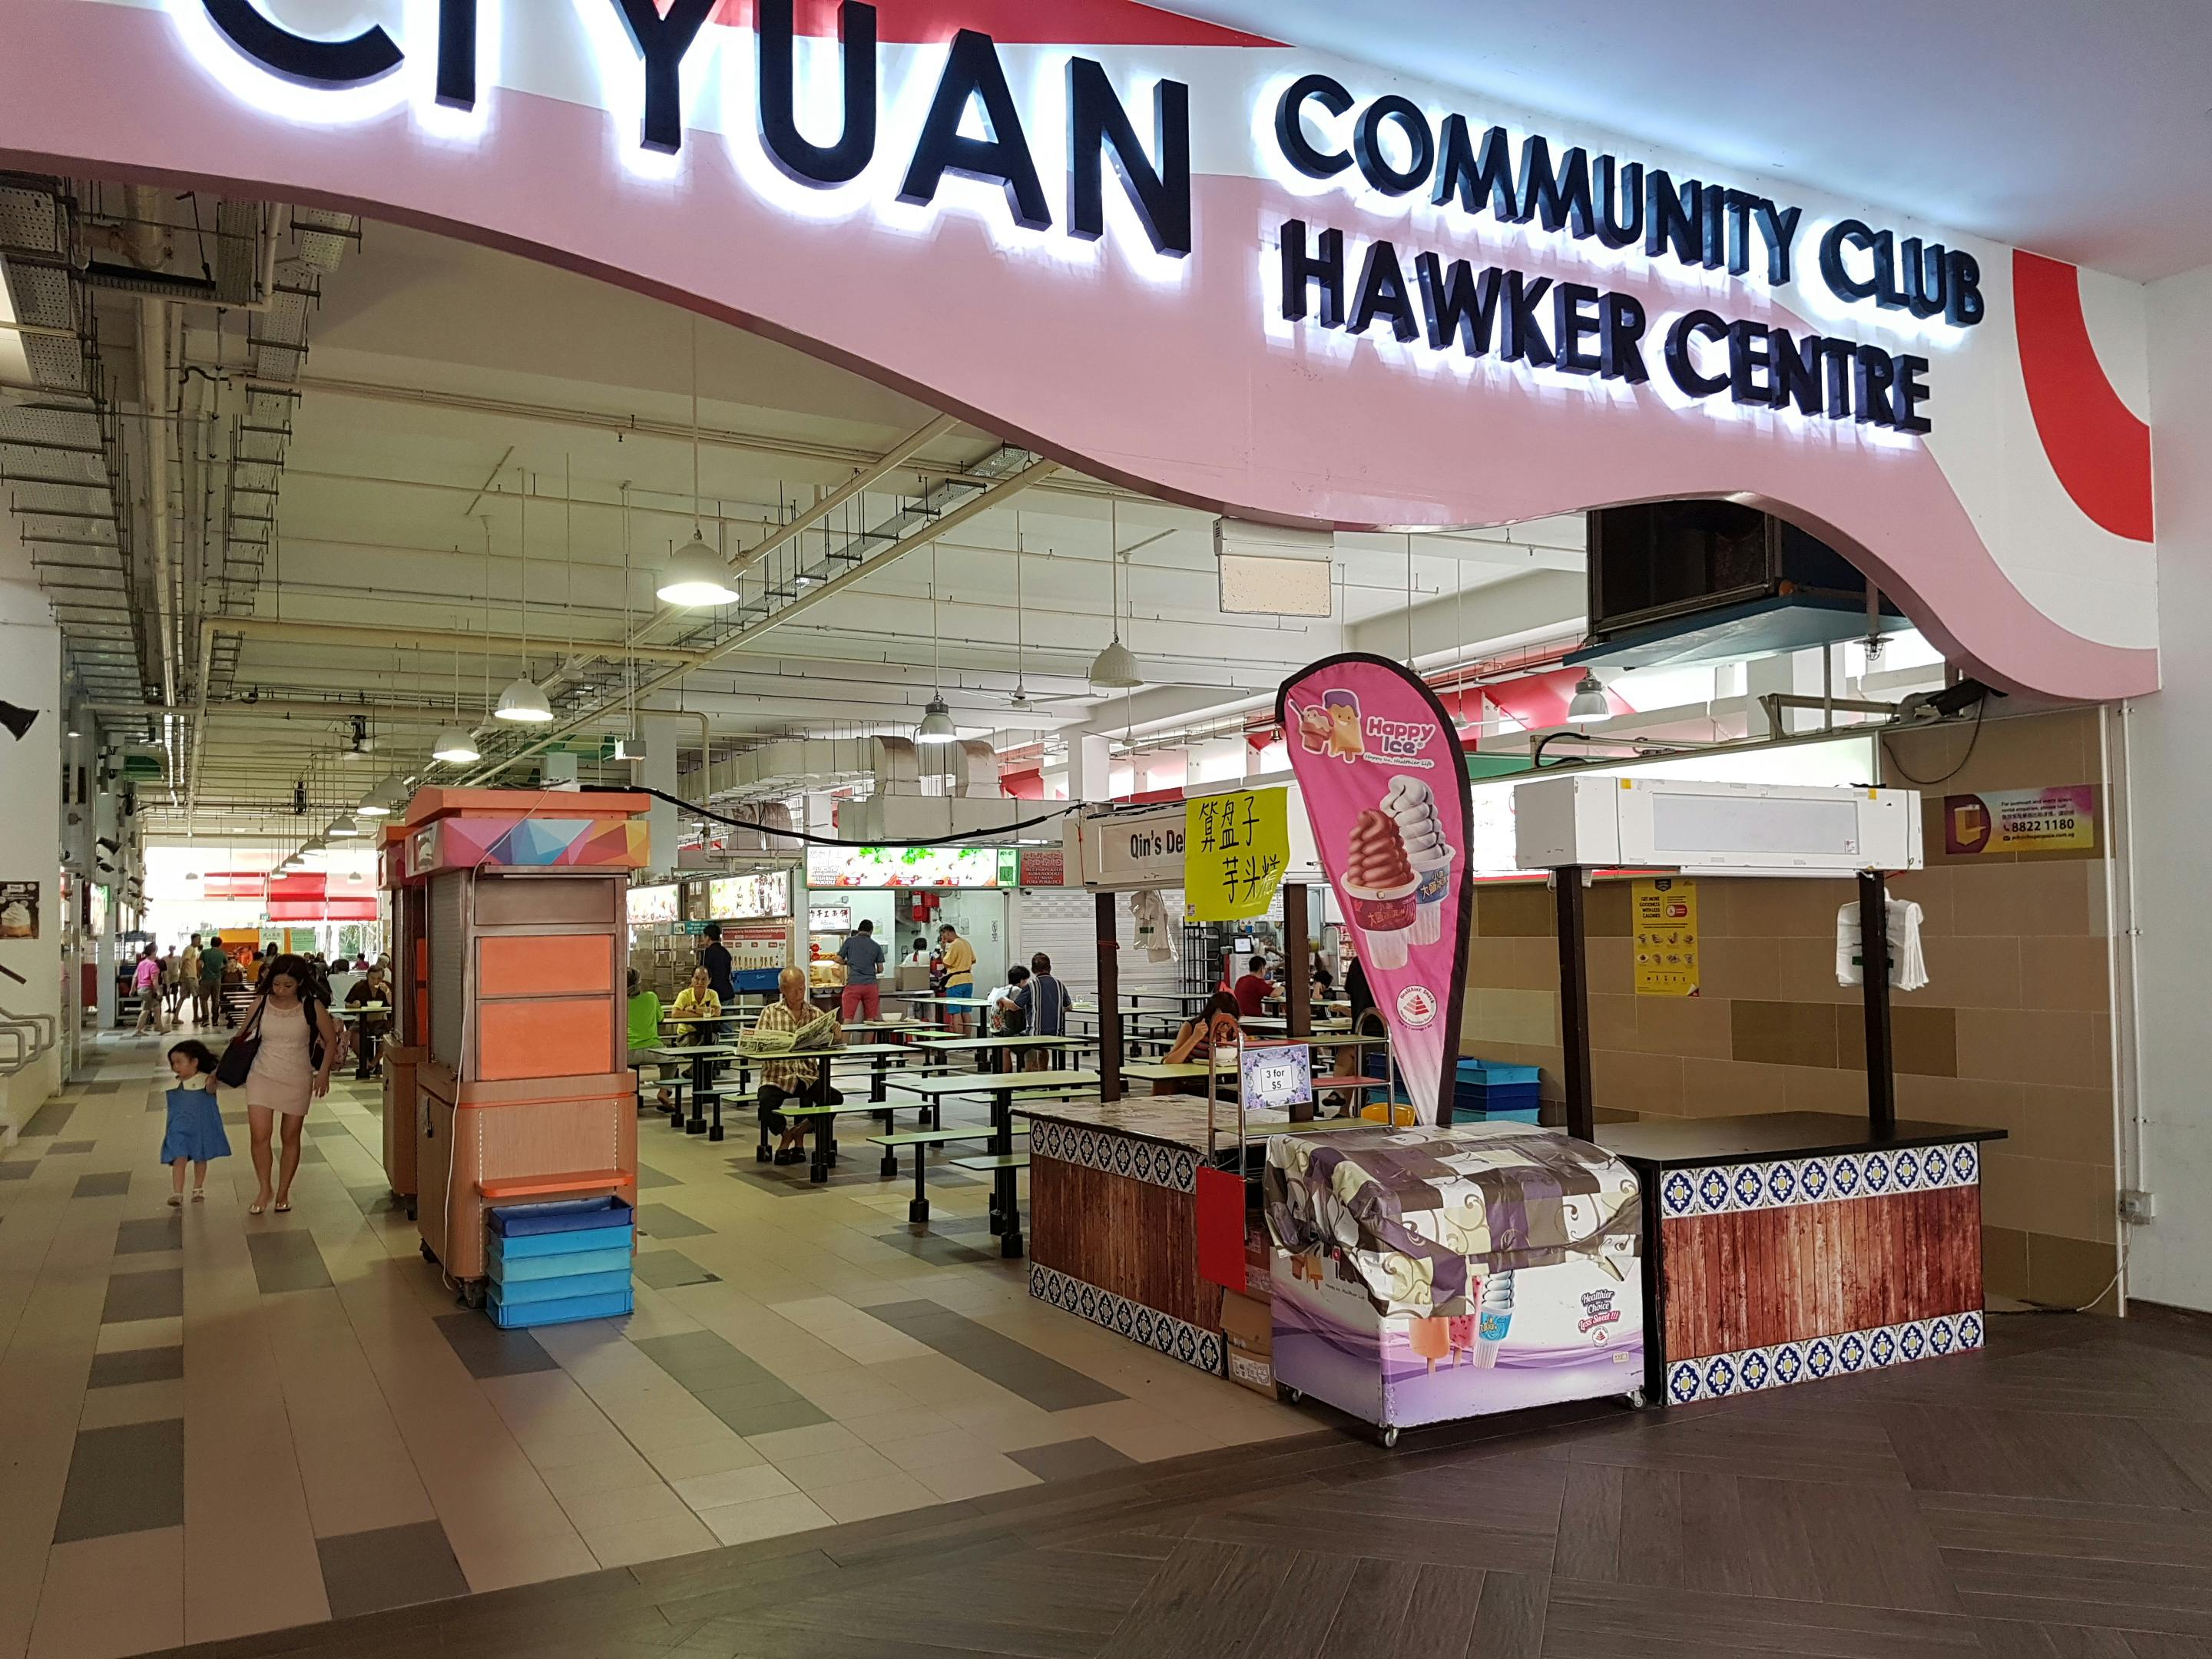 Ci Yuan Hawker Centre.